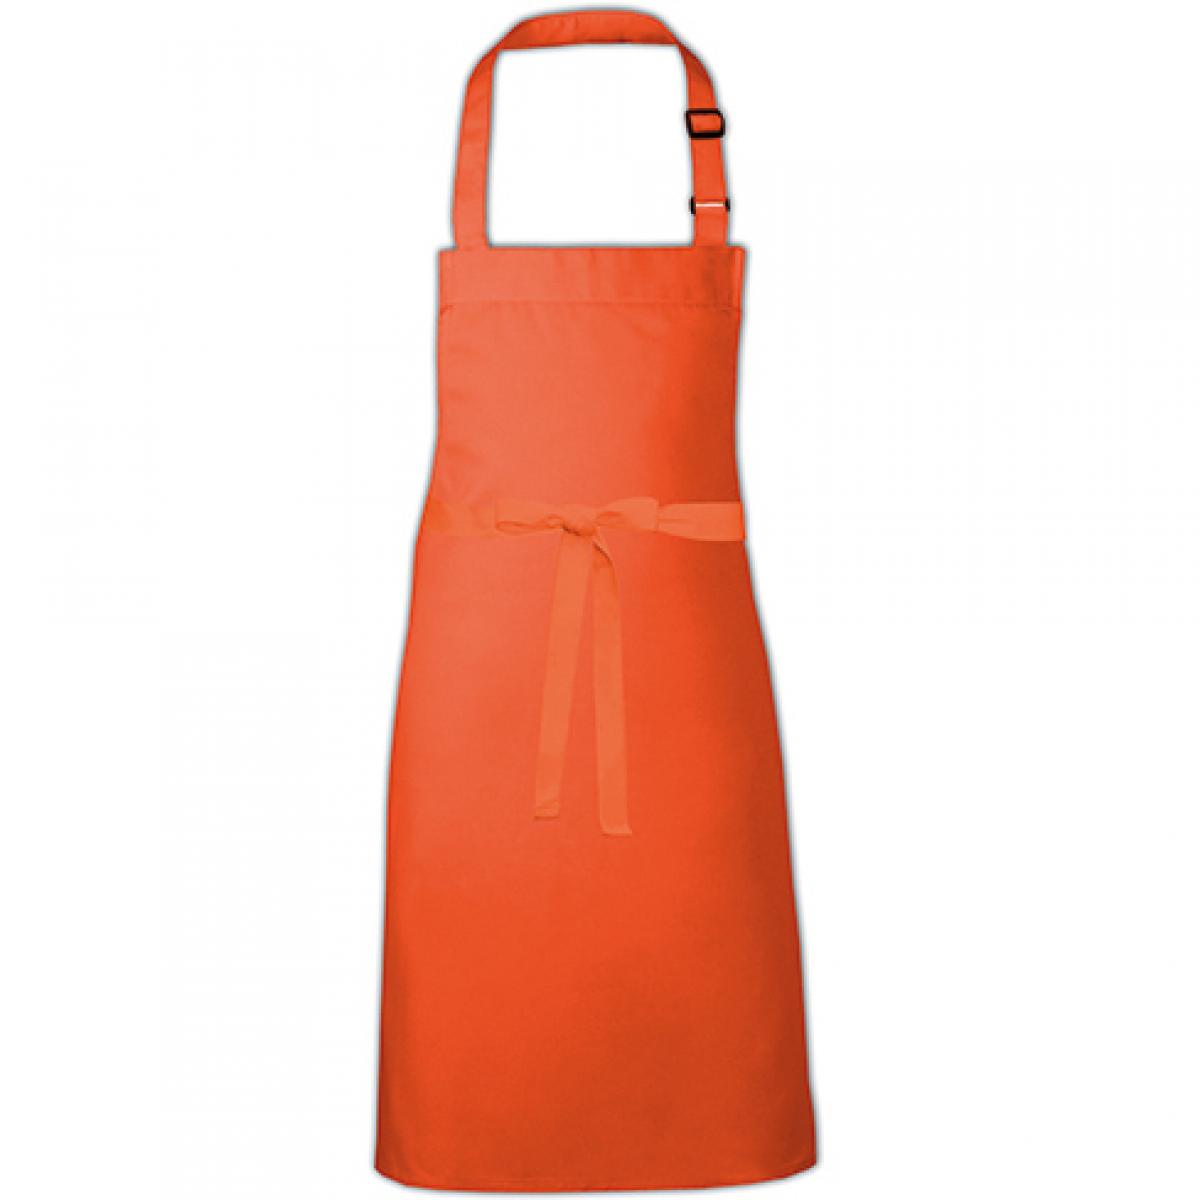 Hersteller: Link Kitchen Wear Herstellernummer: BBQ9073ADJ Artikelbezeichnung: Barbecue Apron adjustable 73 x 90 cm -  Waschbar bis 60 °C Farbe: Orange